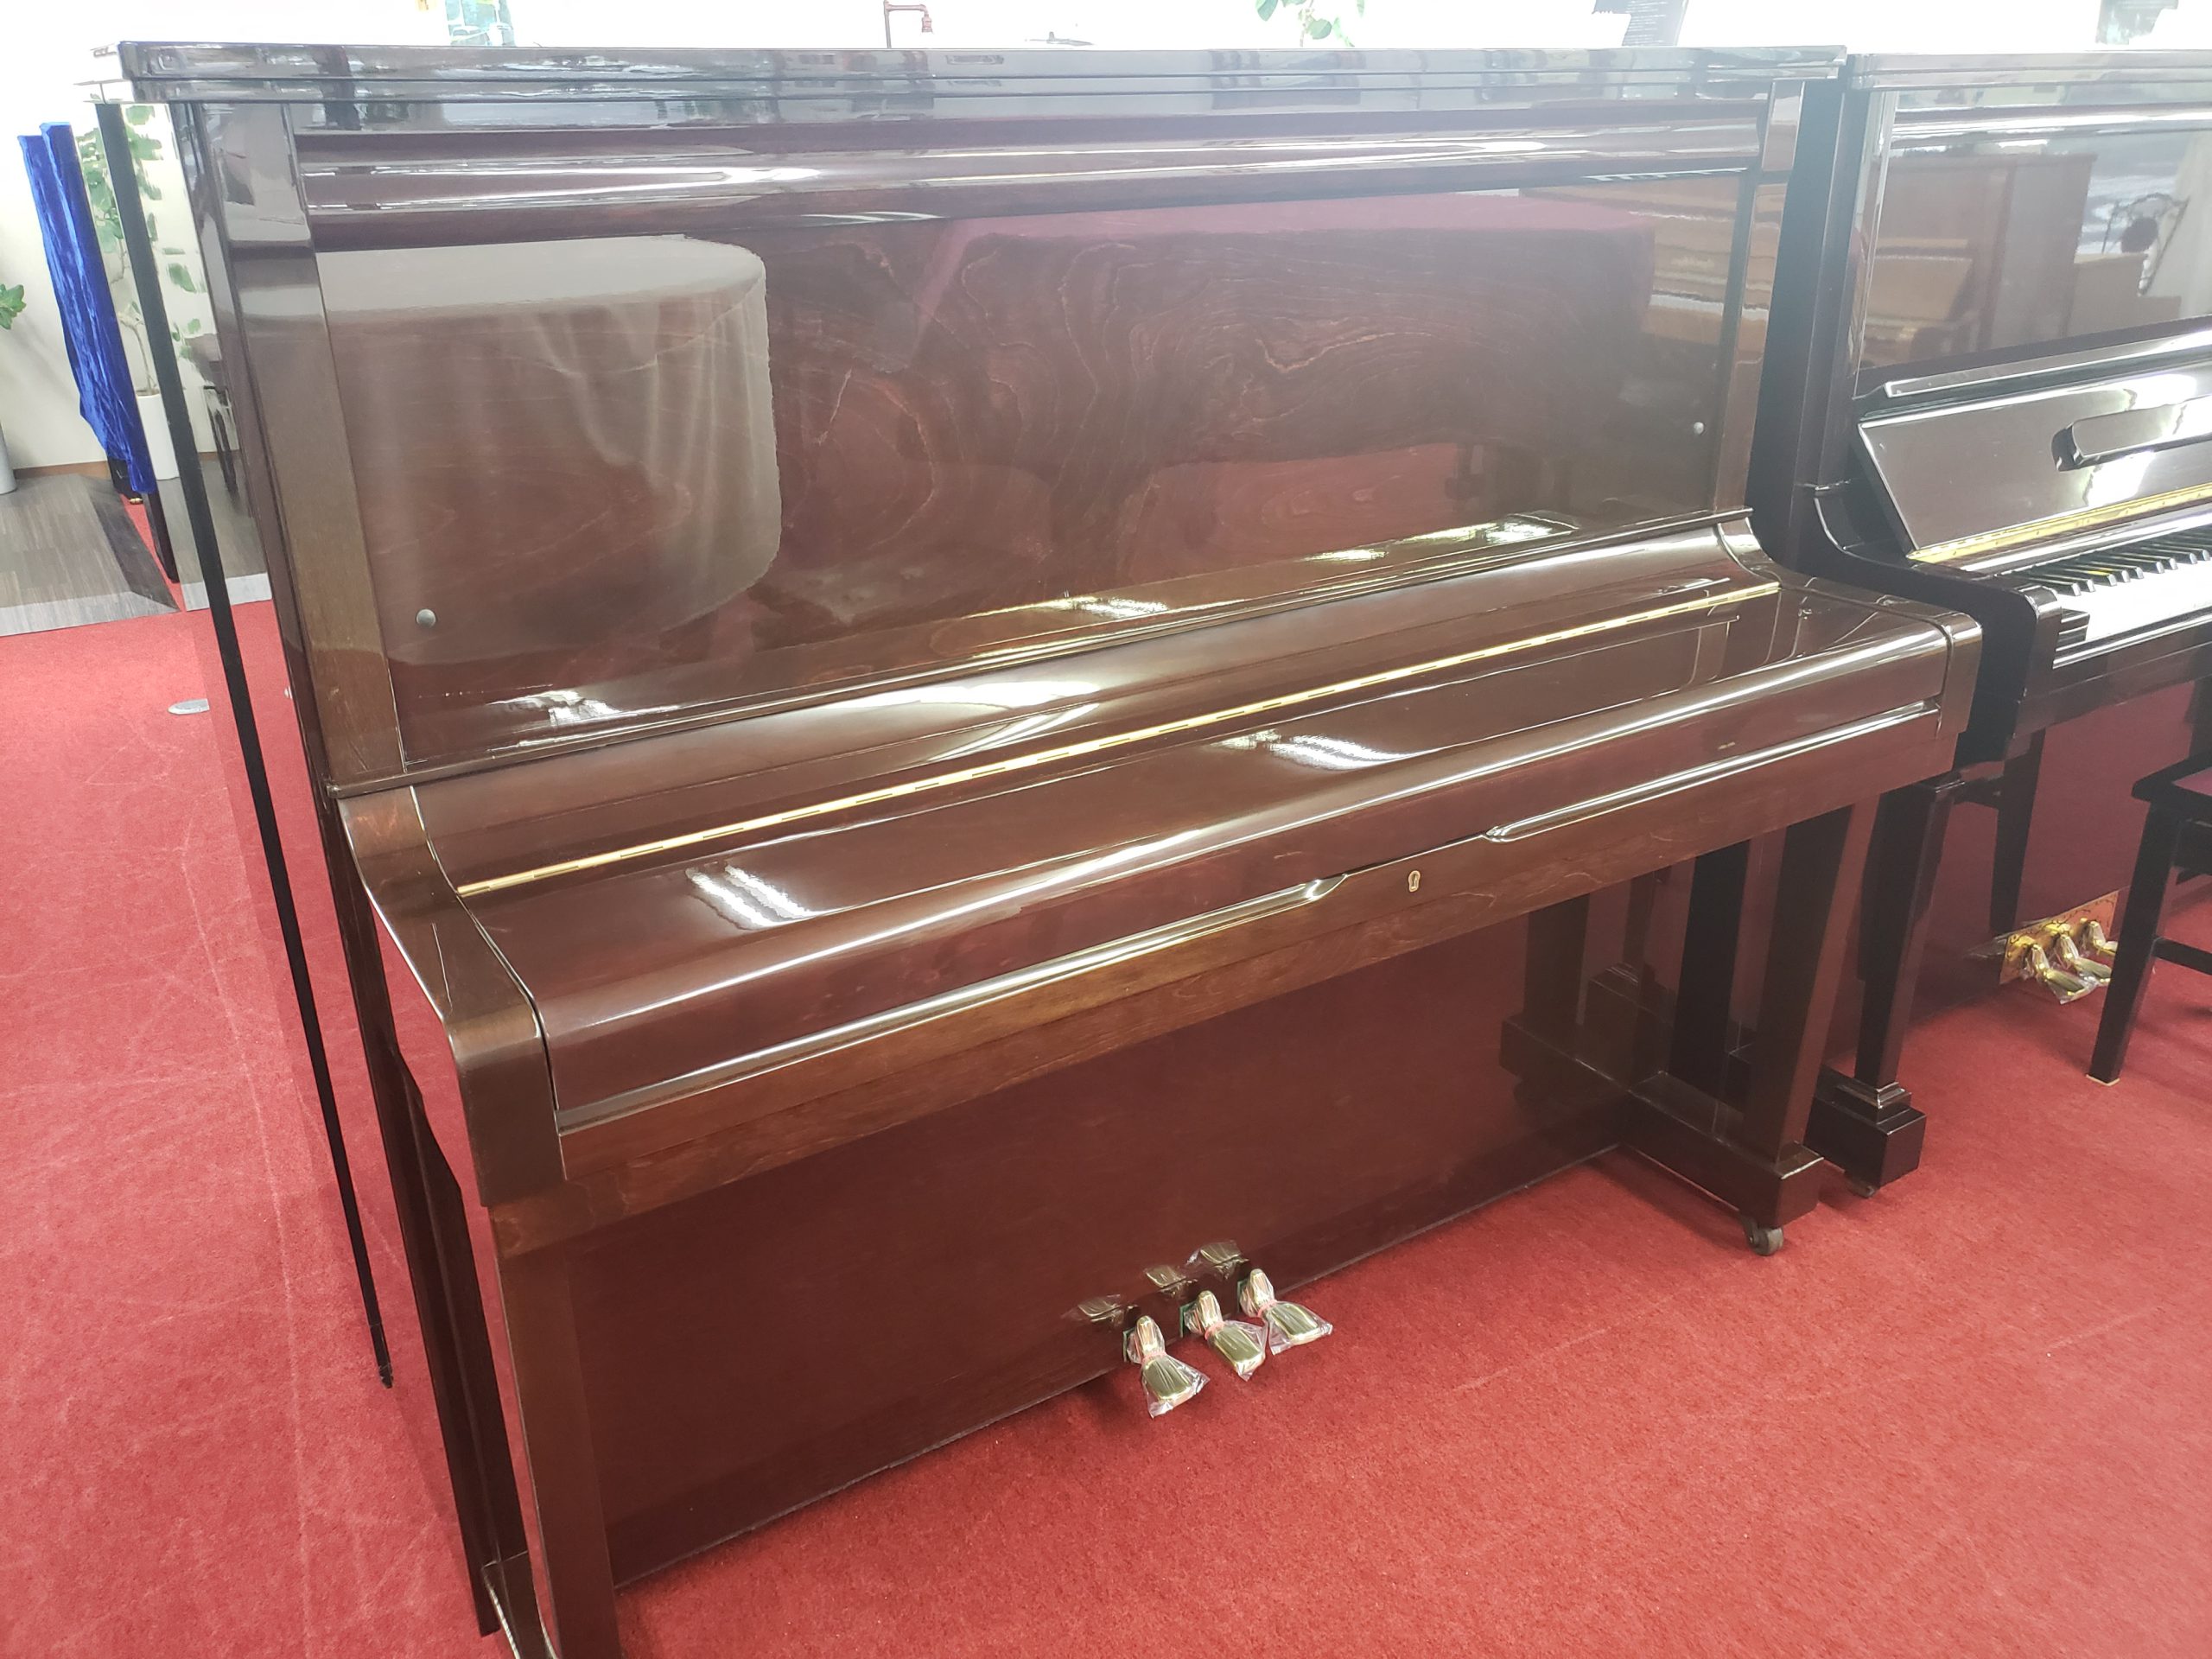 フローラピアノ中古アップライトピアノ EARL WINDSOR W115M DELUXE